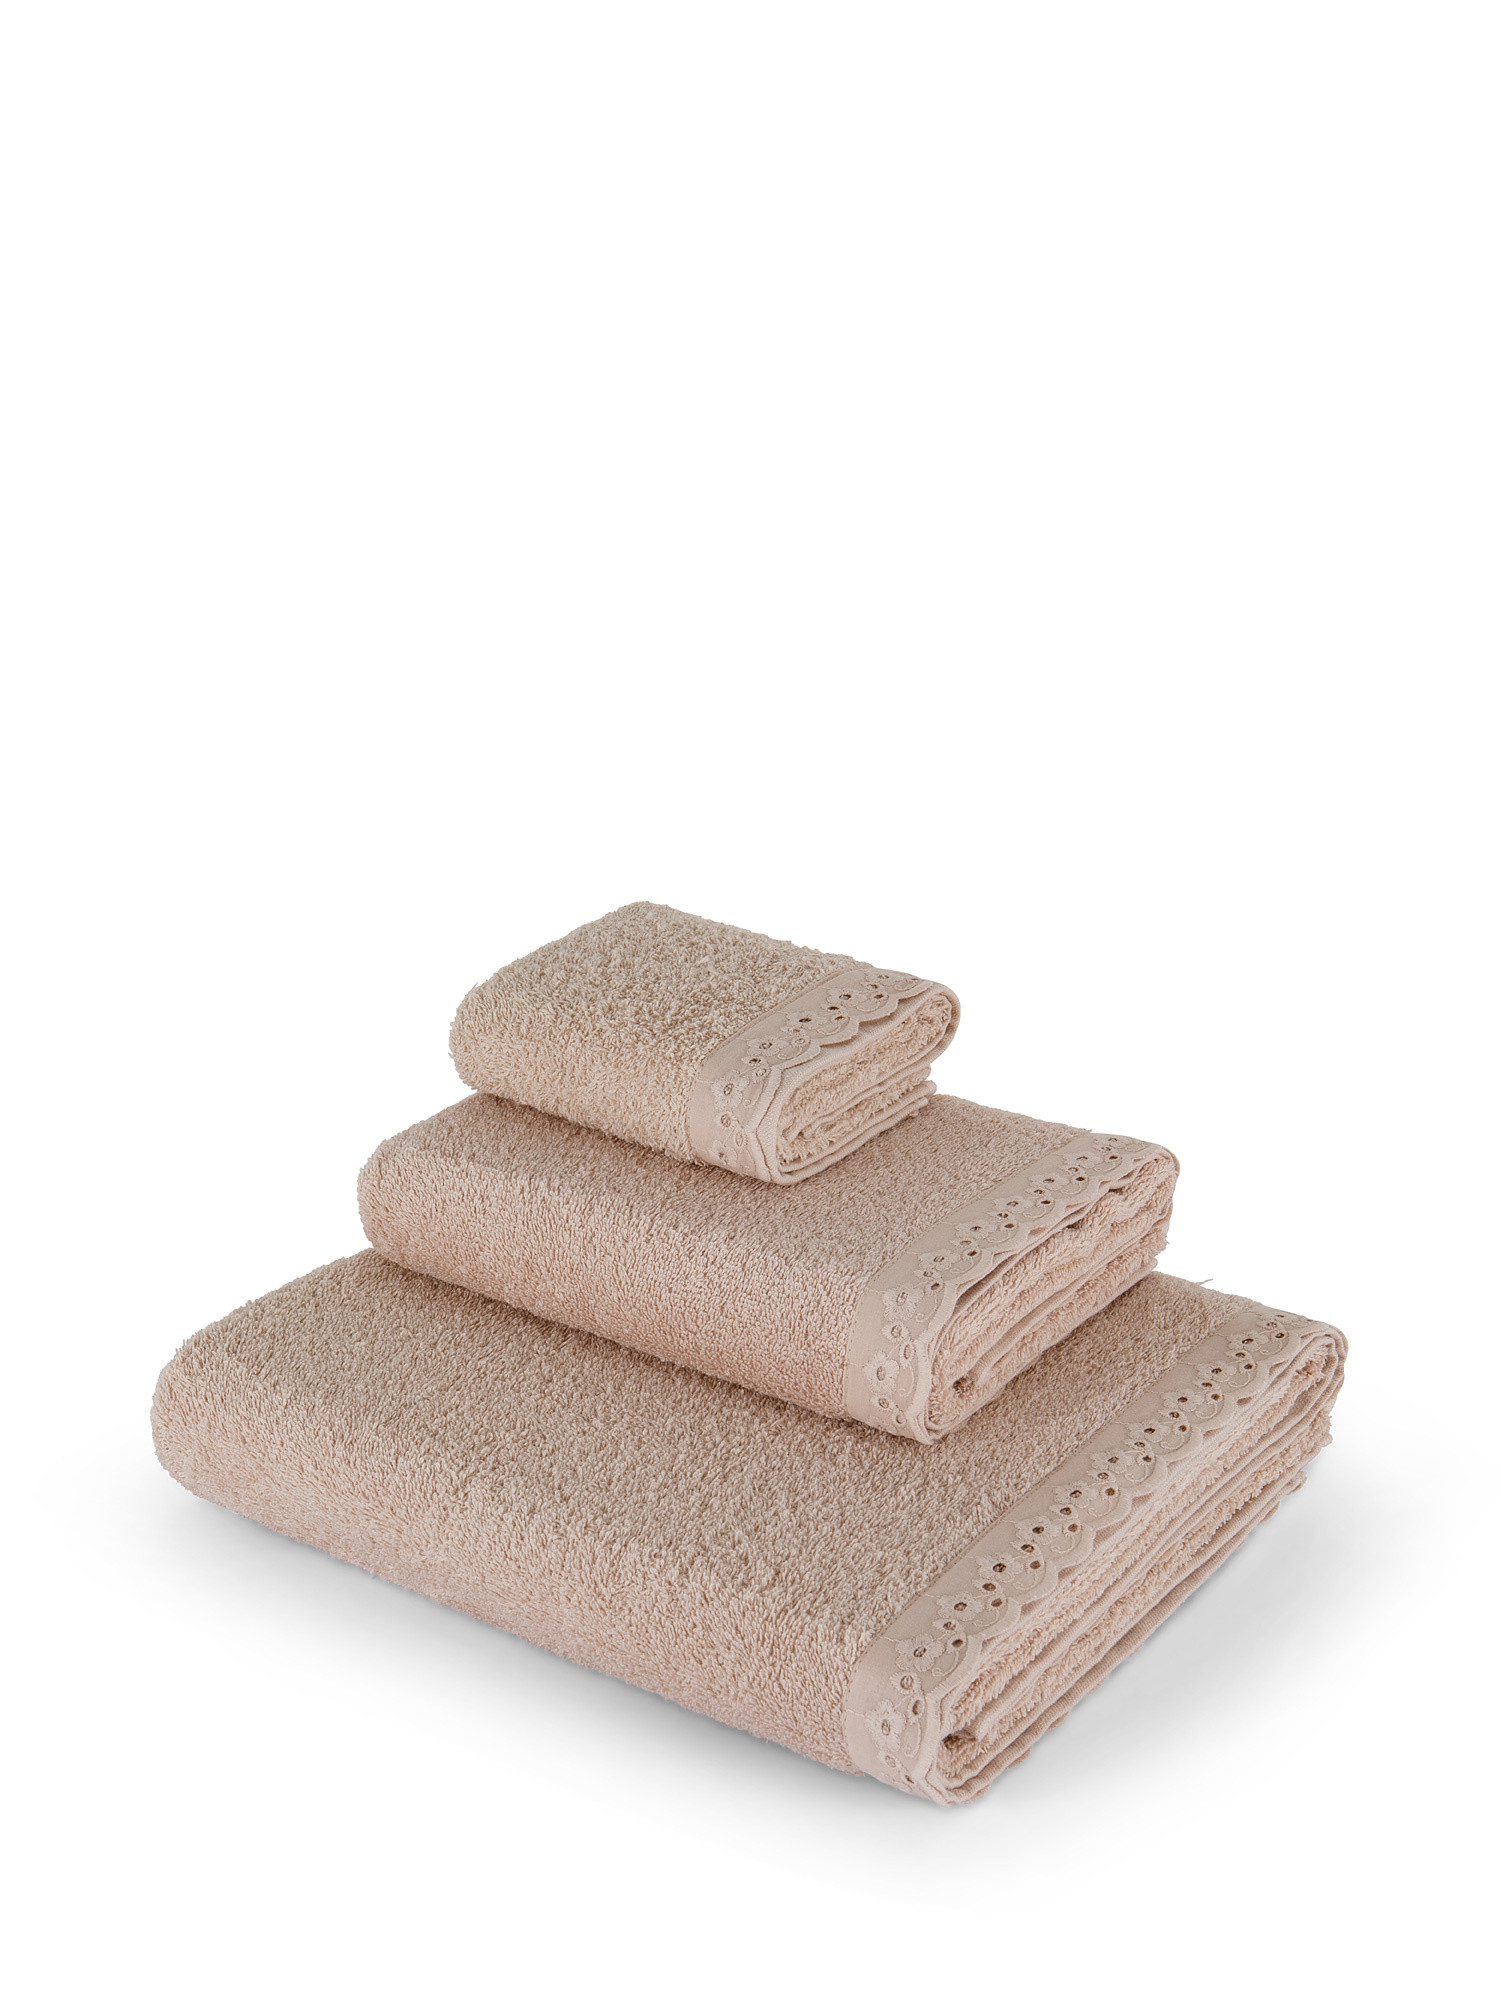 Asciugamano spugna di cotone bordo sangallo, Beige, large